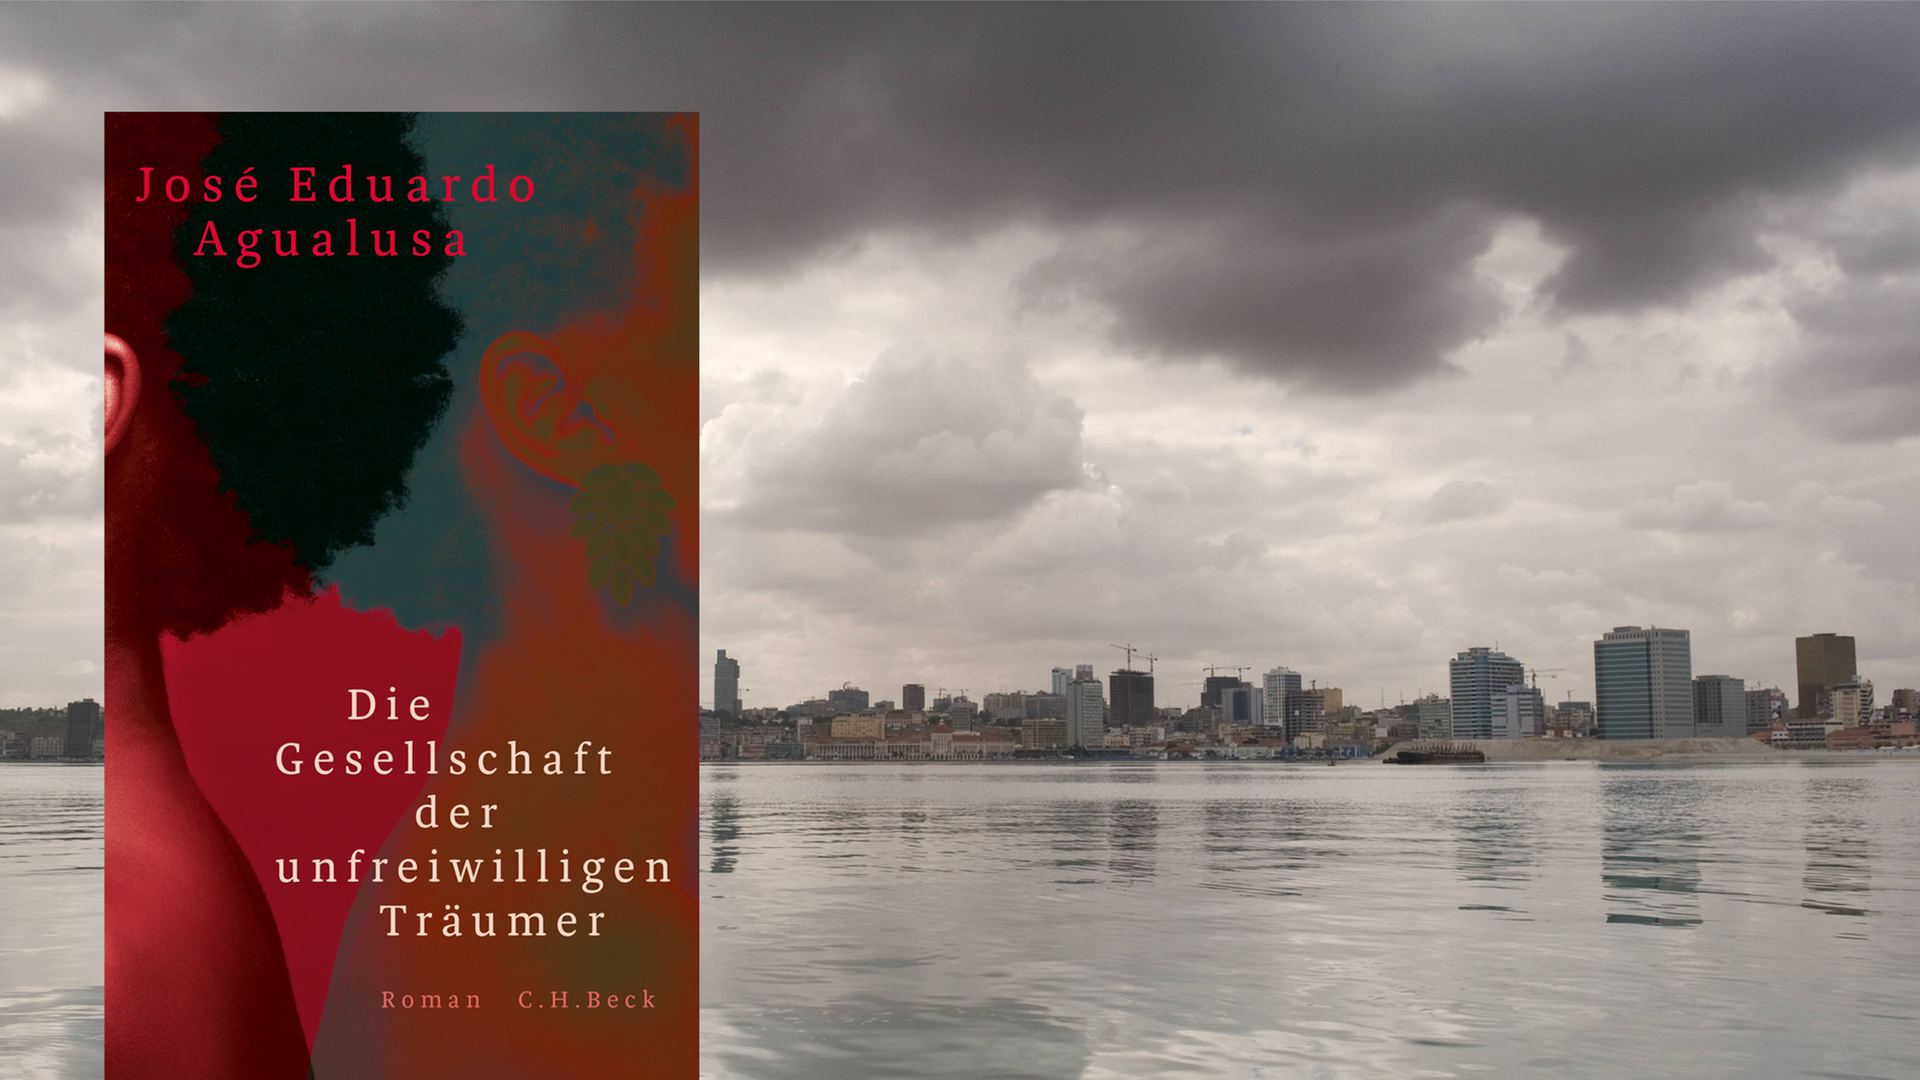 Im Vordergrund ist das Cover des Buches "Die Gesellschaft der unfreiwilligen Träumer". Im Hintergrund ist eine Aufnahme der angolanischen Hauptstadt Luanda vom Meer aus.